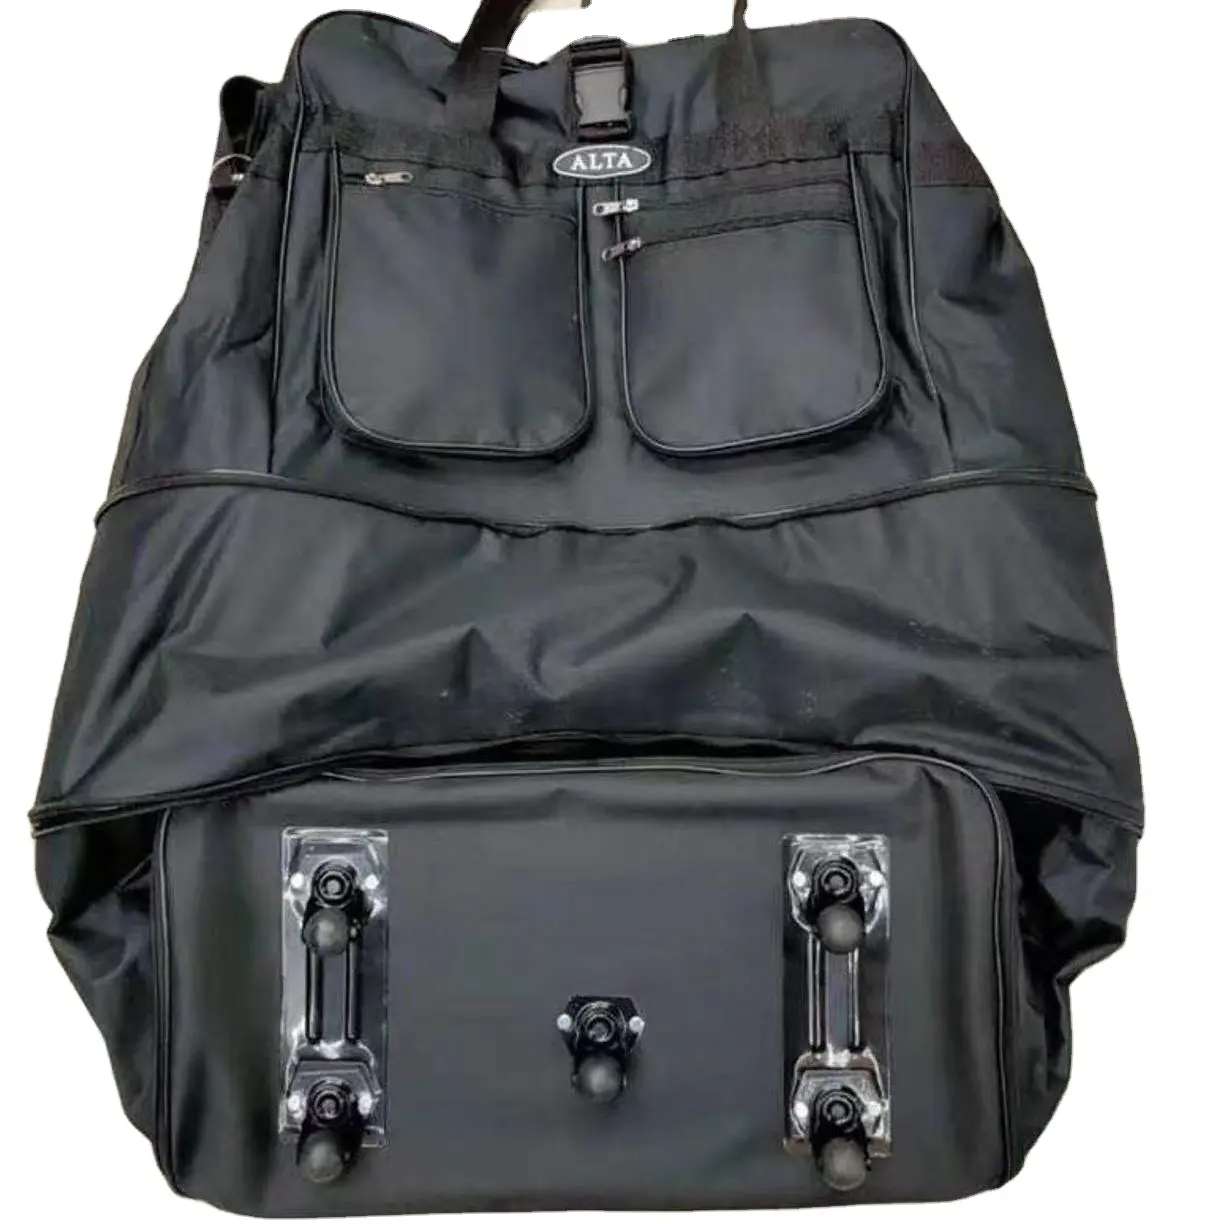 حقيبة سفر كلاسيكية باللون الأسود, حقيبة سفر كلاسيكية باللون الأسود قياس 36 بوصة تحمل على عربات السفر مع 5 عجلات